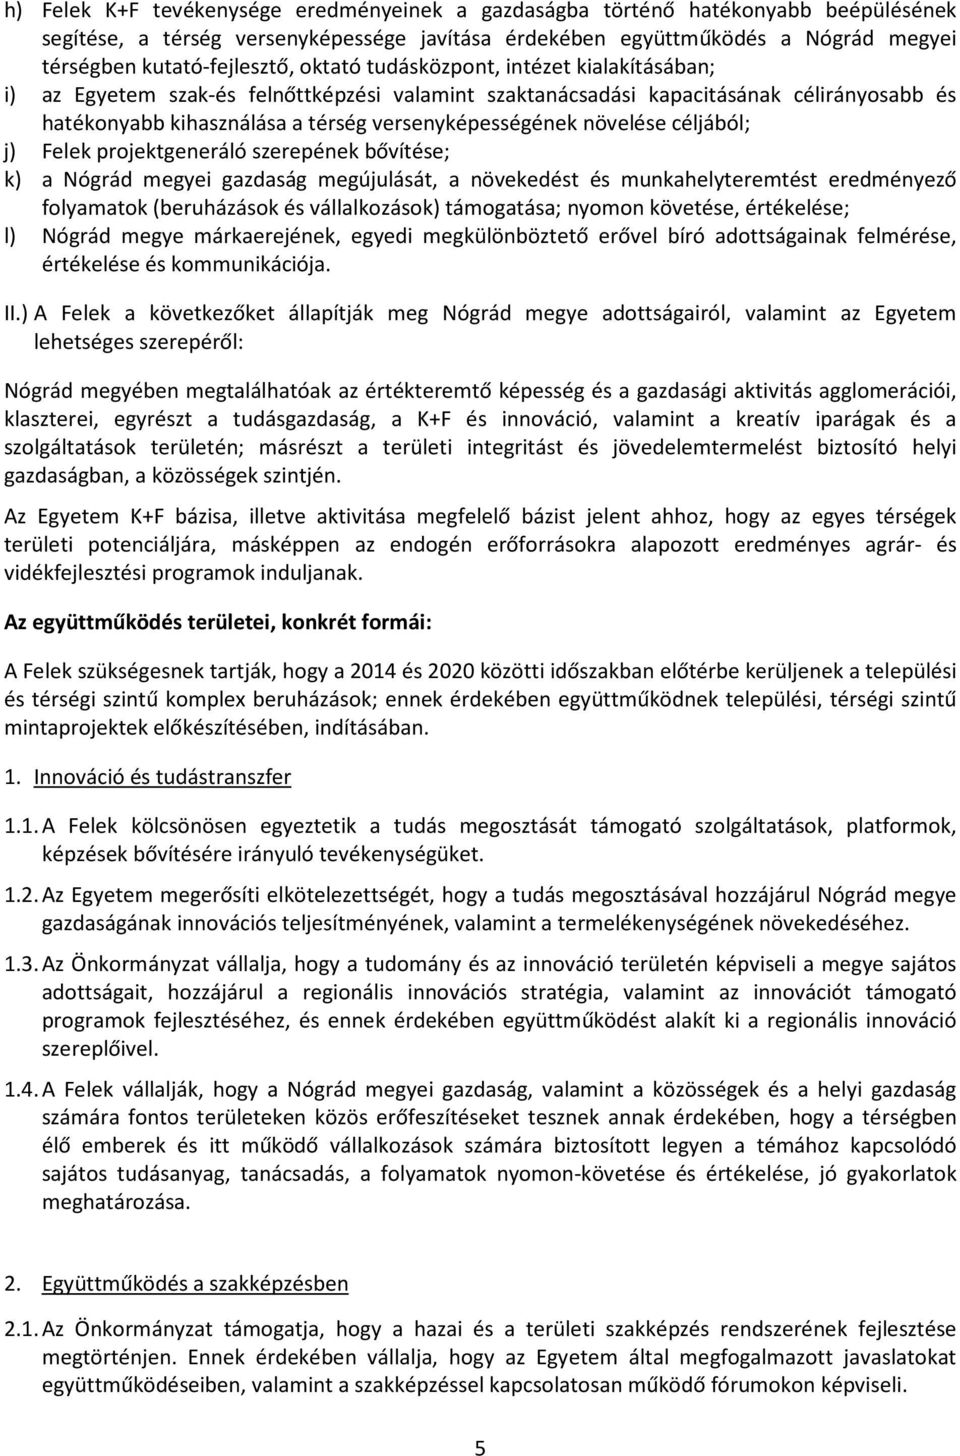 növelése céljából; j) Felek projektgeneráló szerepének bővítése; k) a Nógrád megyei gazdaság megújulását, a növekedést és munkahelyteremtést eredményező folyamatok (beruházások és vállalkozások)